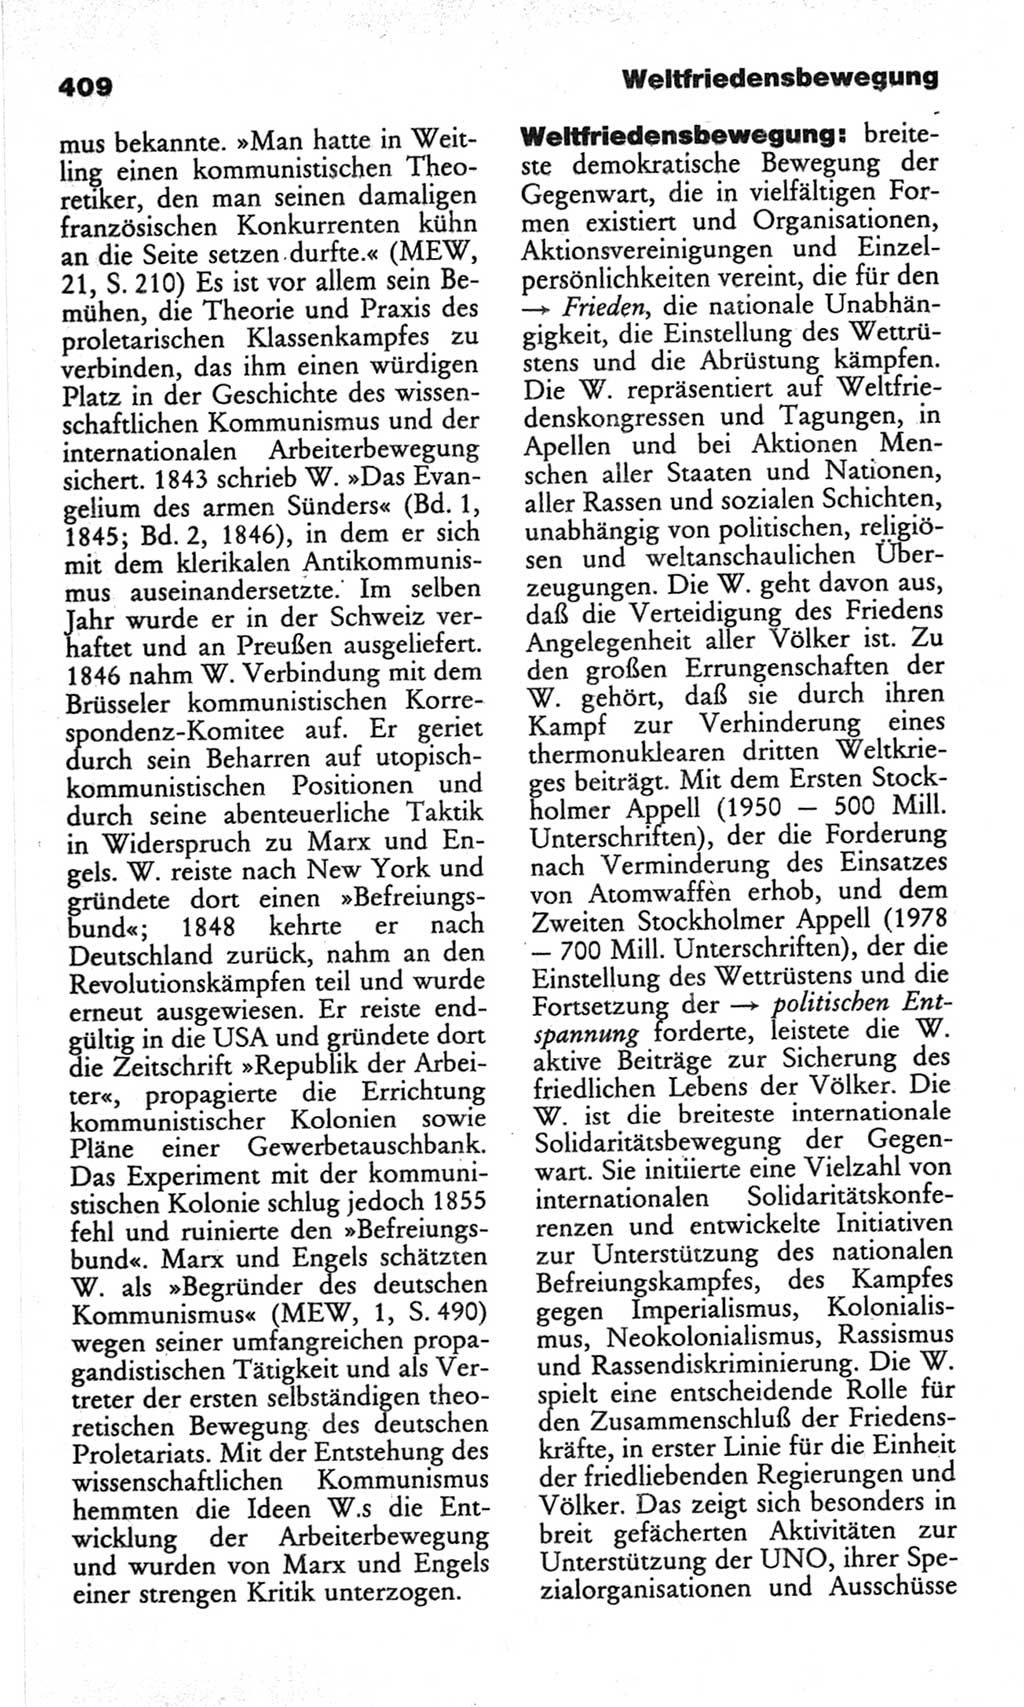 Wörterbuch des wissenschaftlichen Kommunismus [Deutsche Demokratische Republik (DDR)] 1982, Seite 409 (Wb. wiss. Komm. DDR 1982, S. 409)